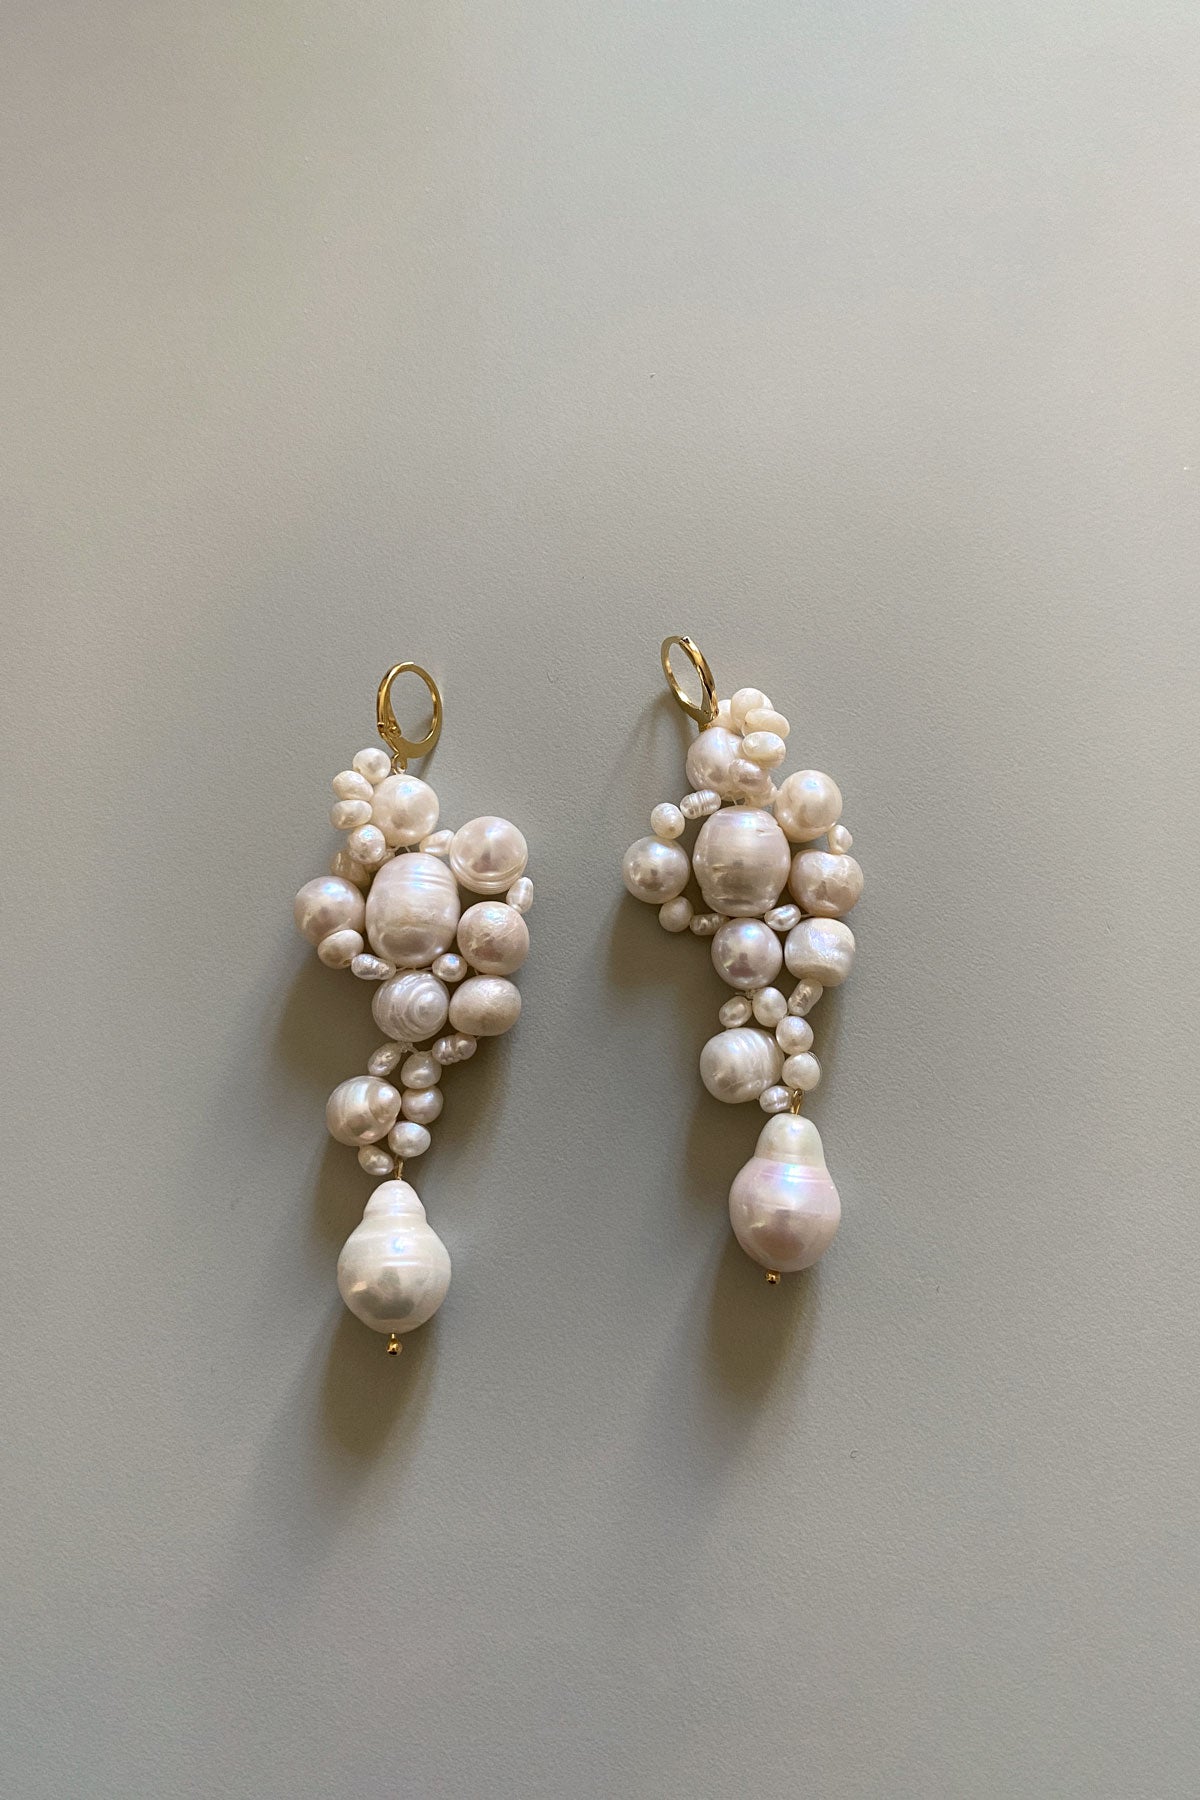 Pearl Cinema earrings